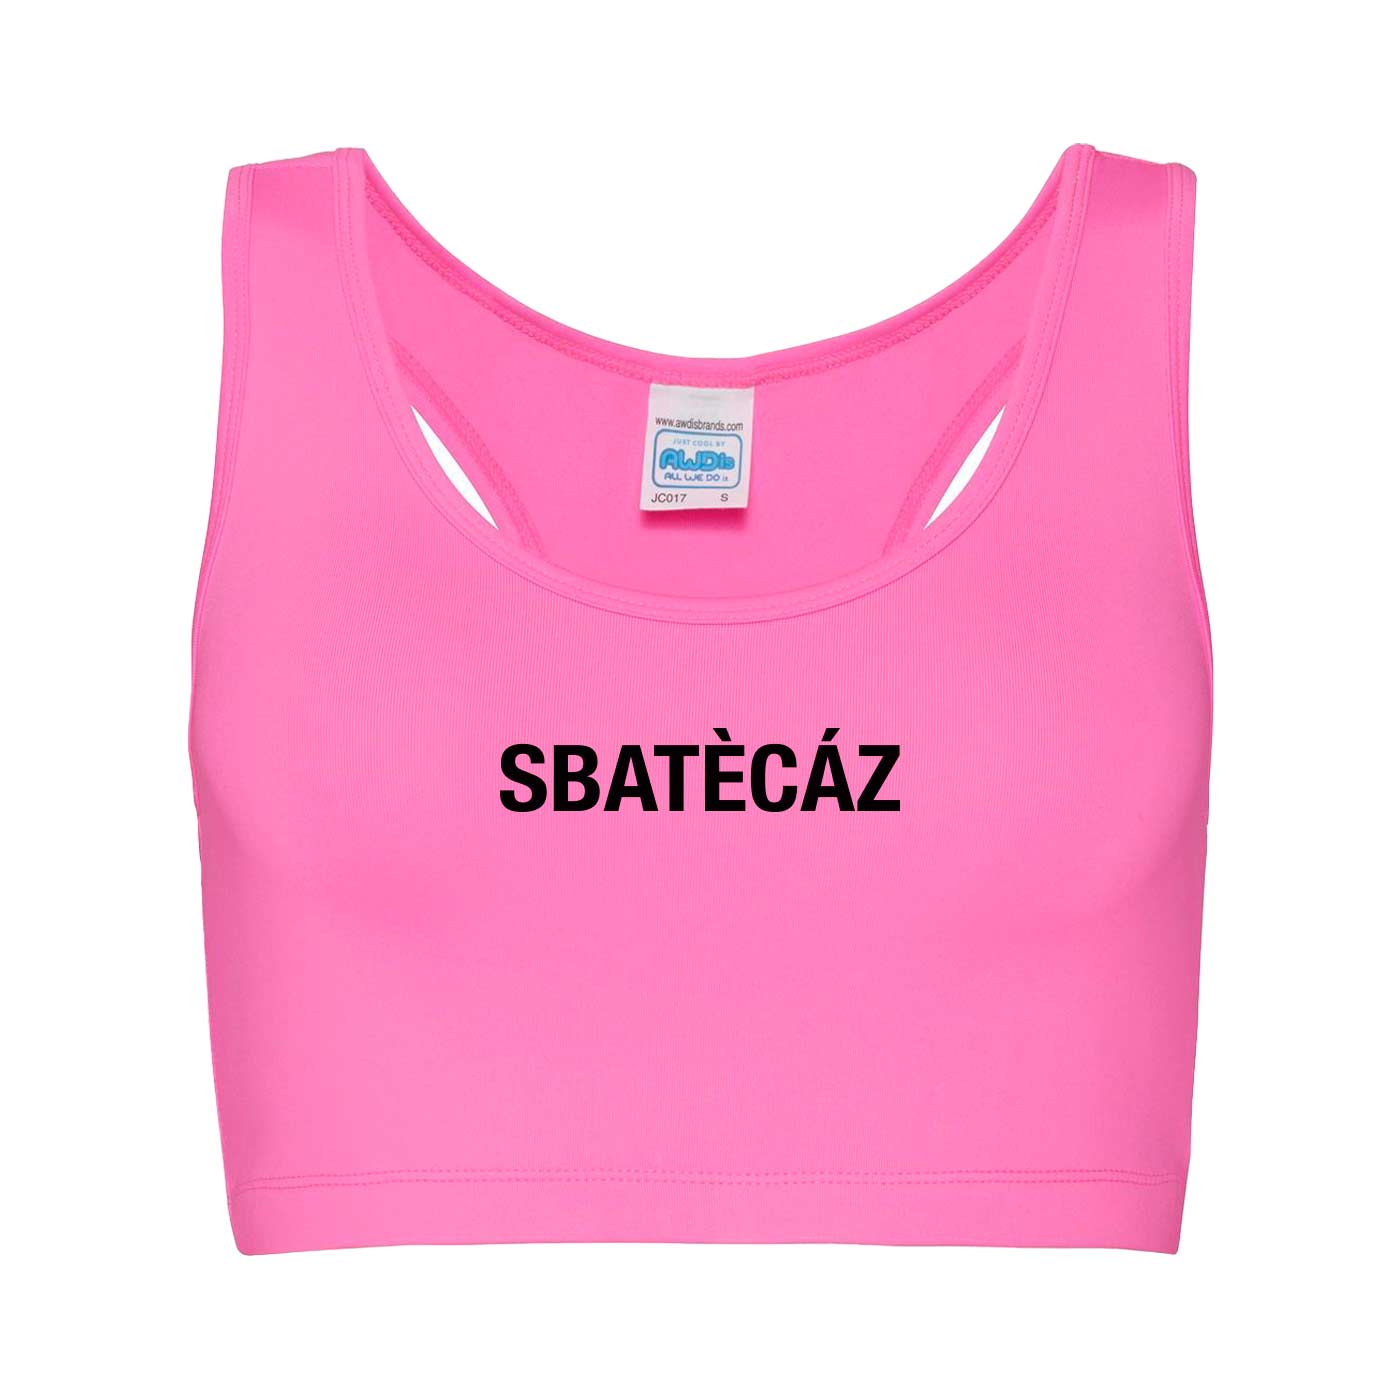 Top Sbatecaz - Girlie Cool Sports Crop Top